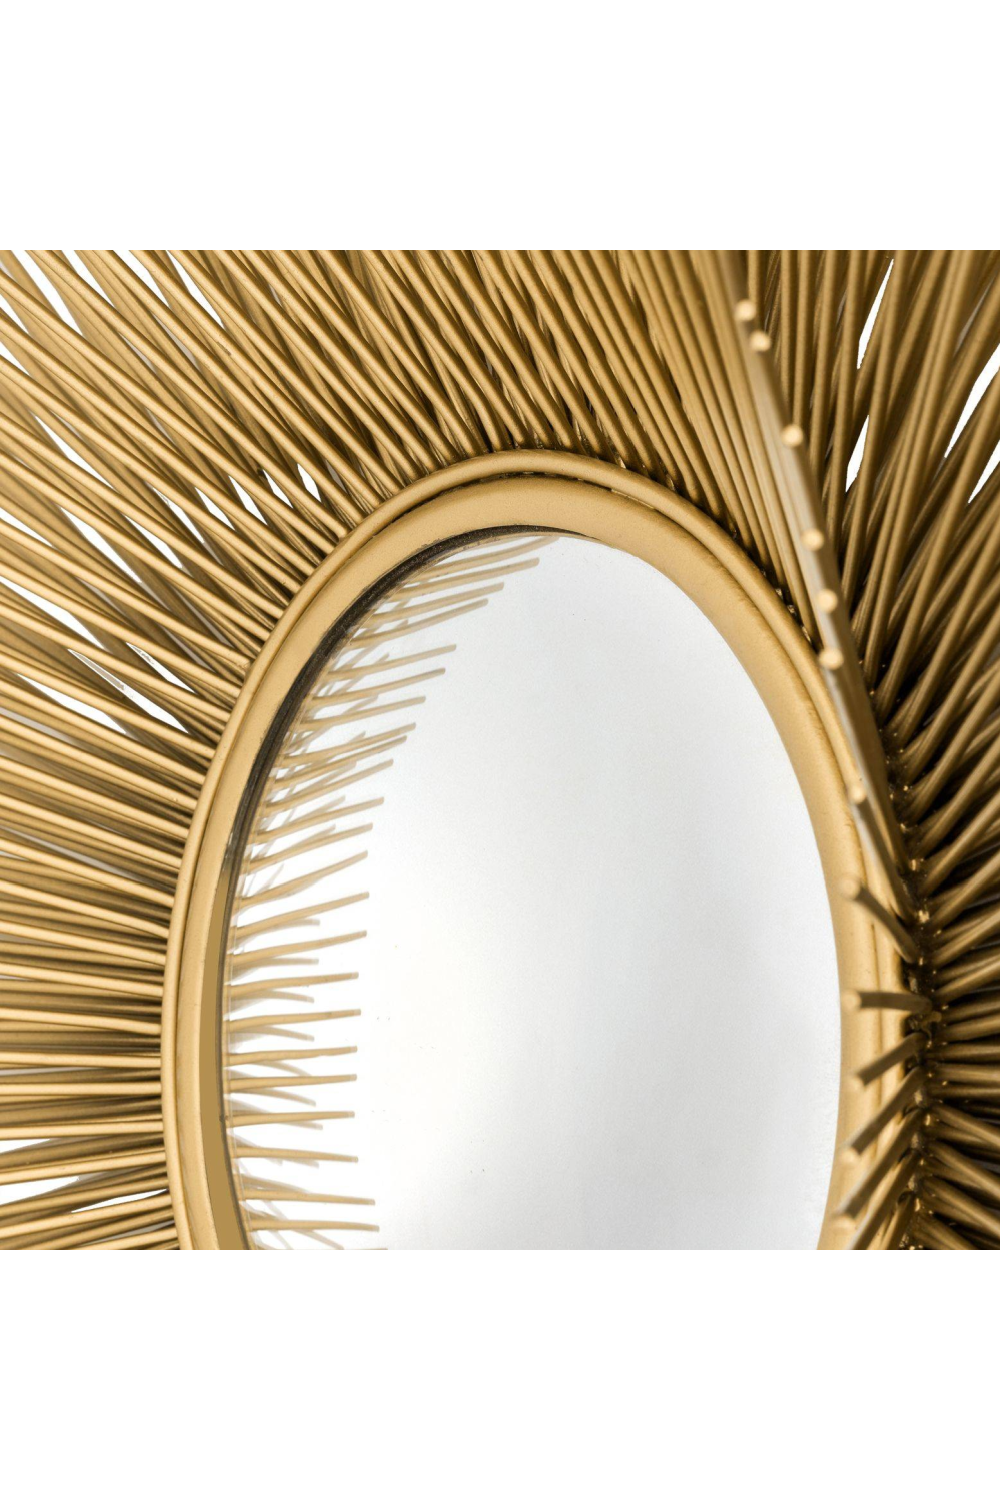 Sun-Shaped Mirror | Eichholtz Solaris | OROA